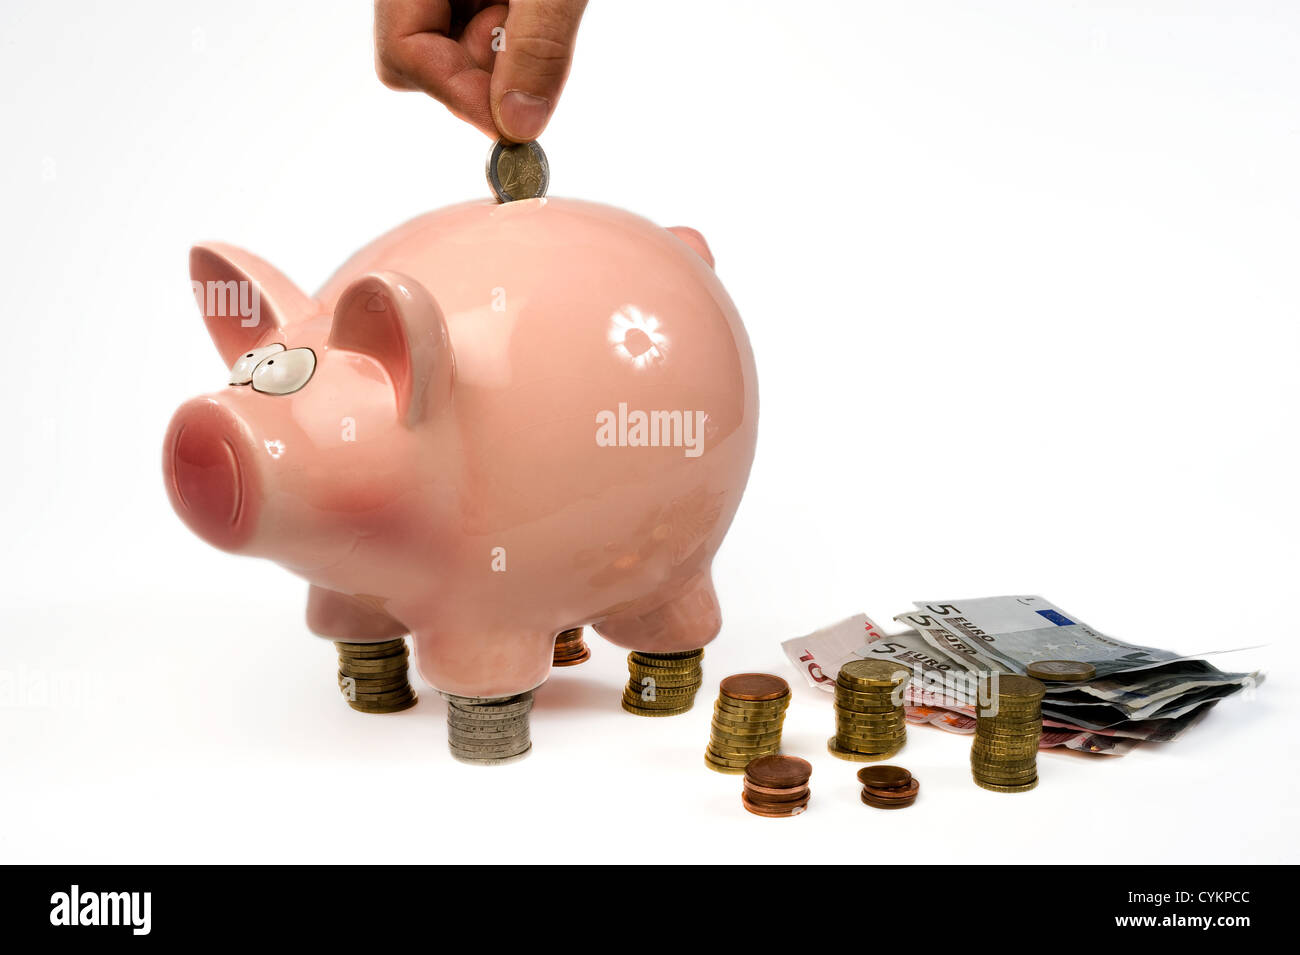 Una mano está poniendo una moneda de 2 euros en un cerdo de ahorro Foto de stock